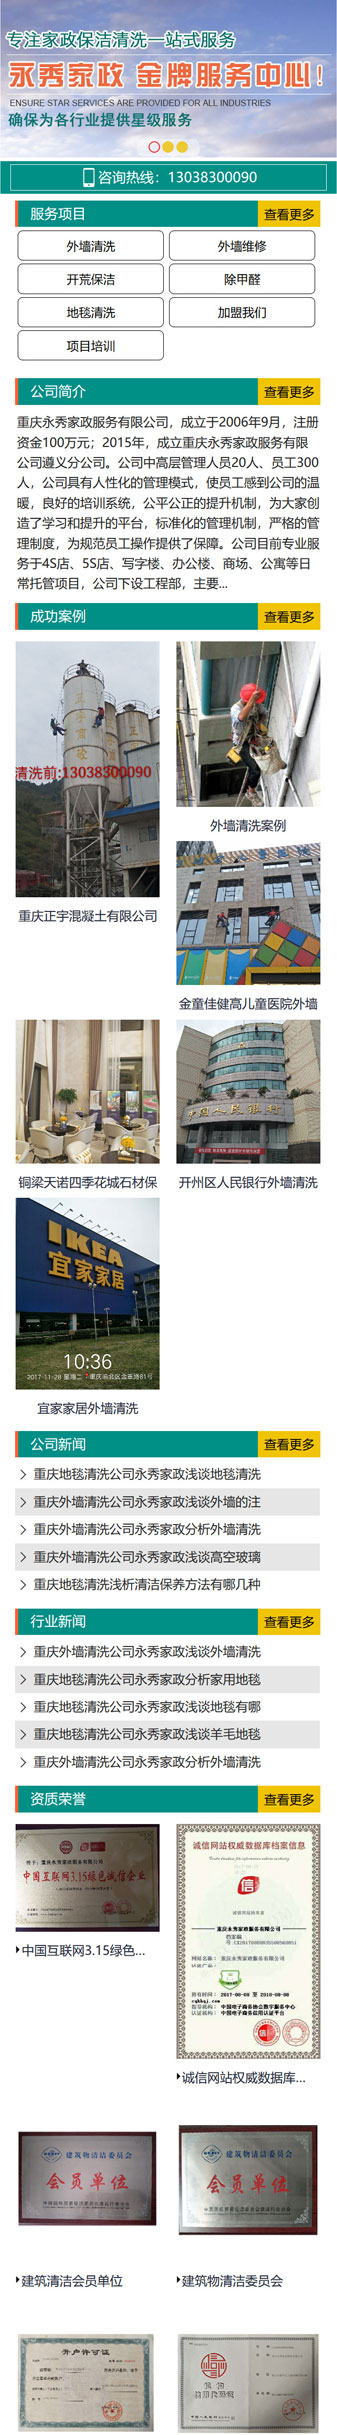 重庆永秀家政服务公司网站建设案例